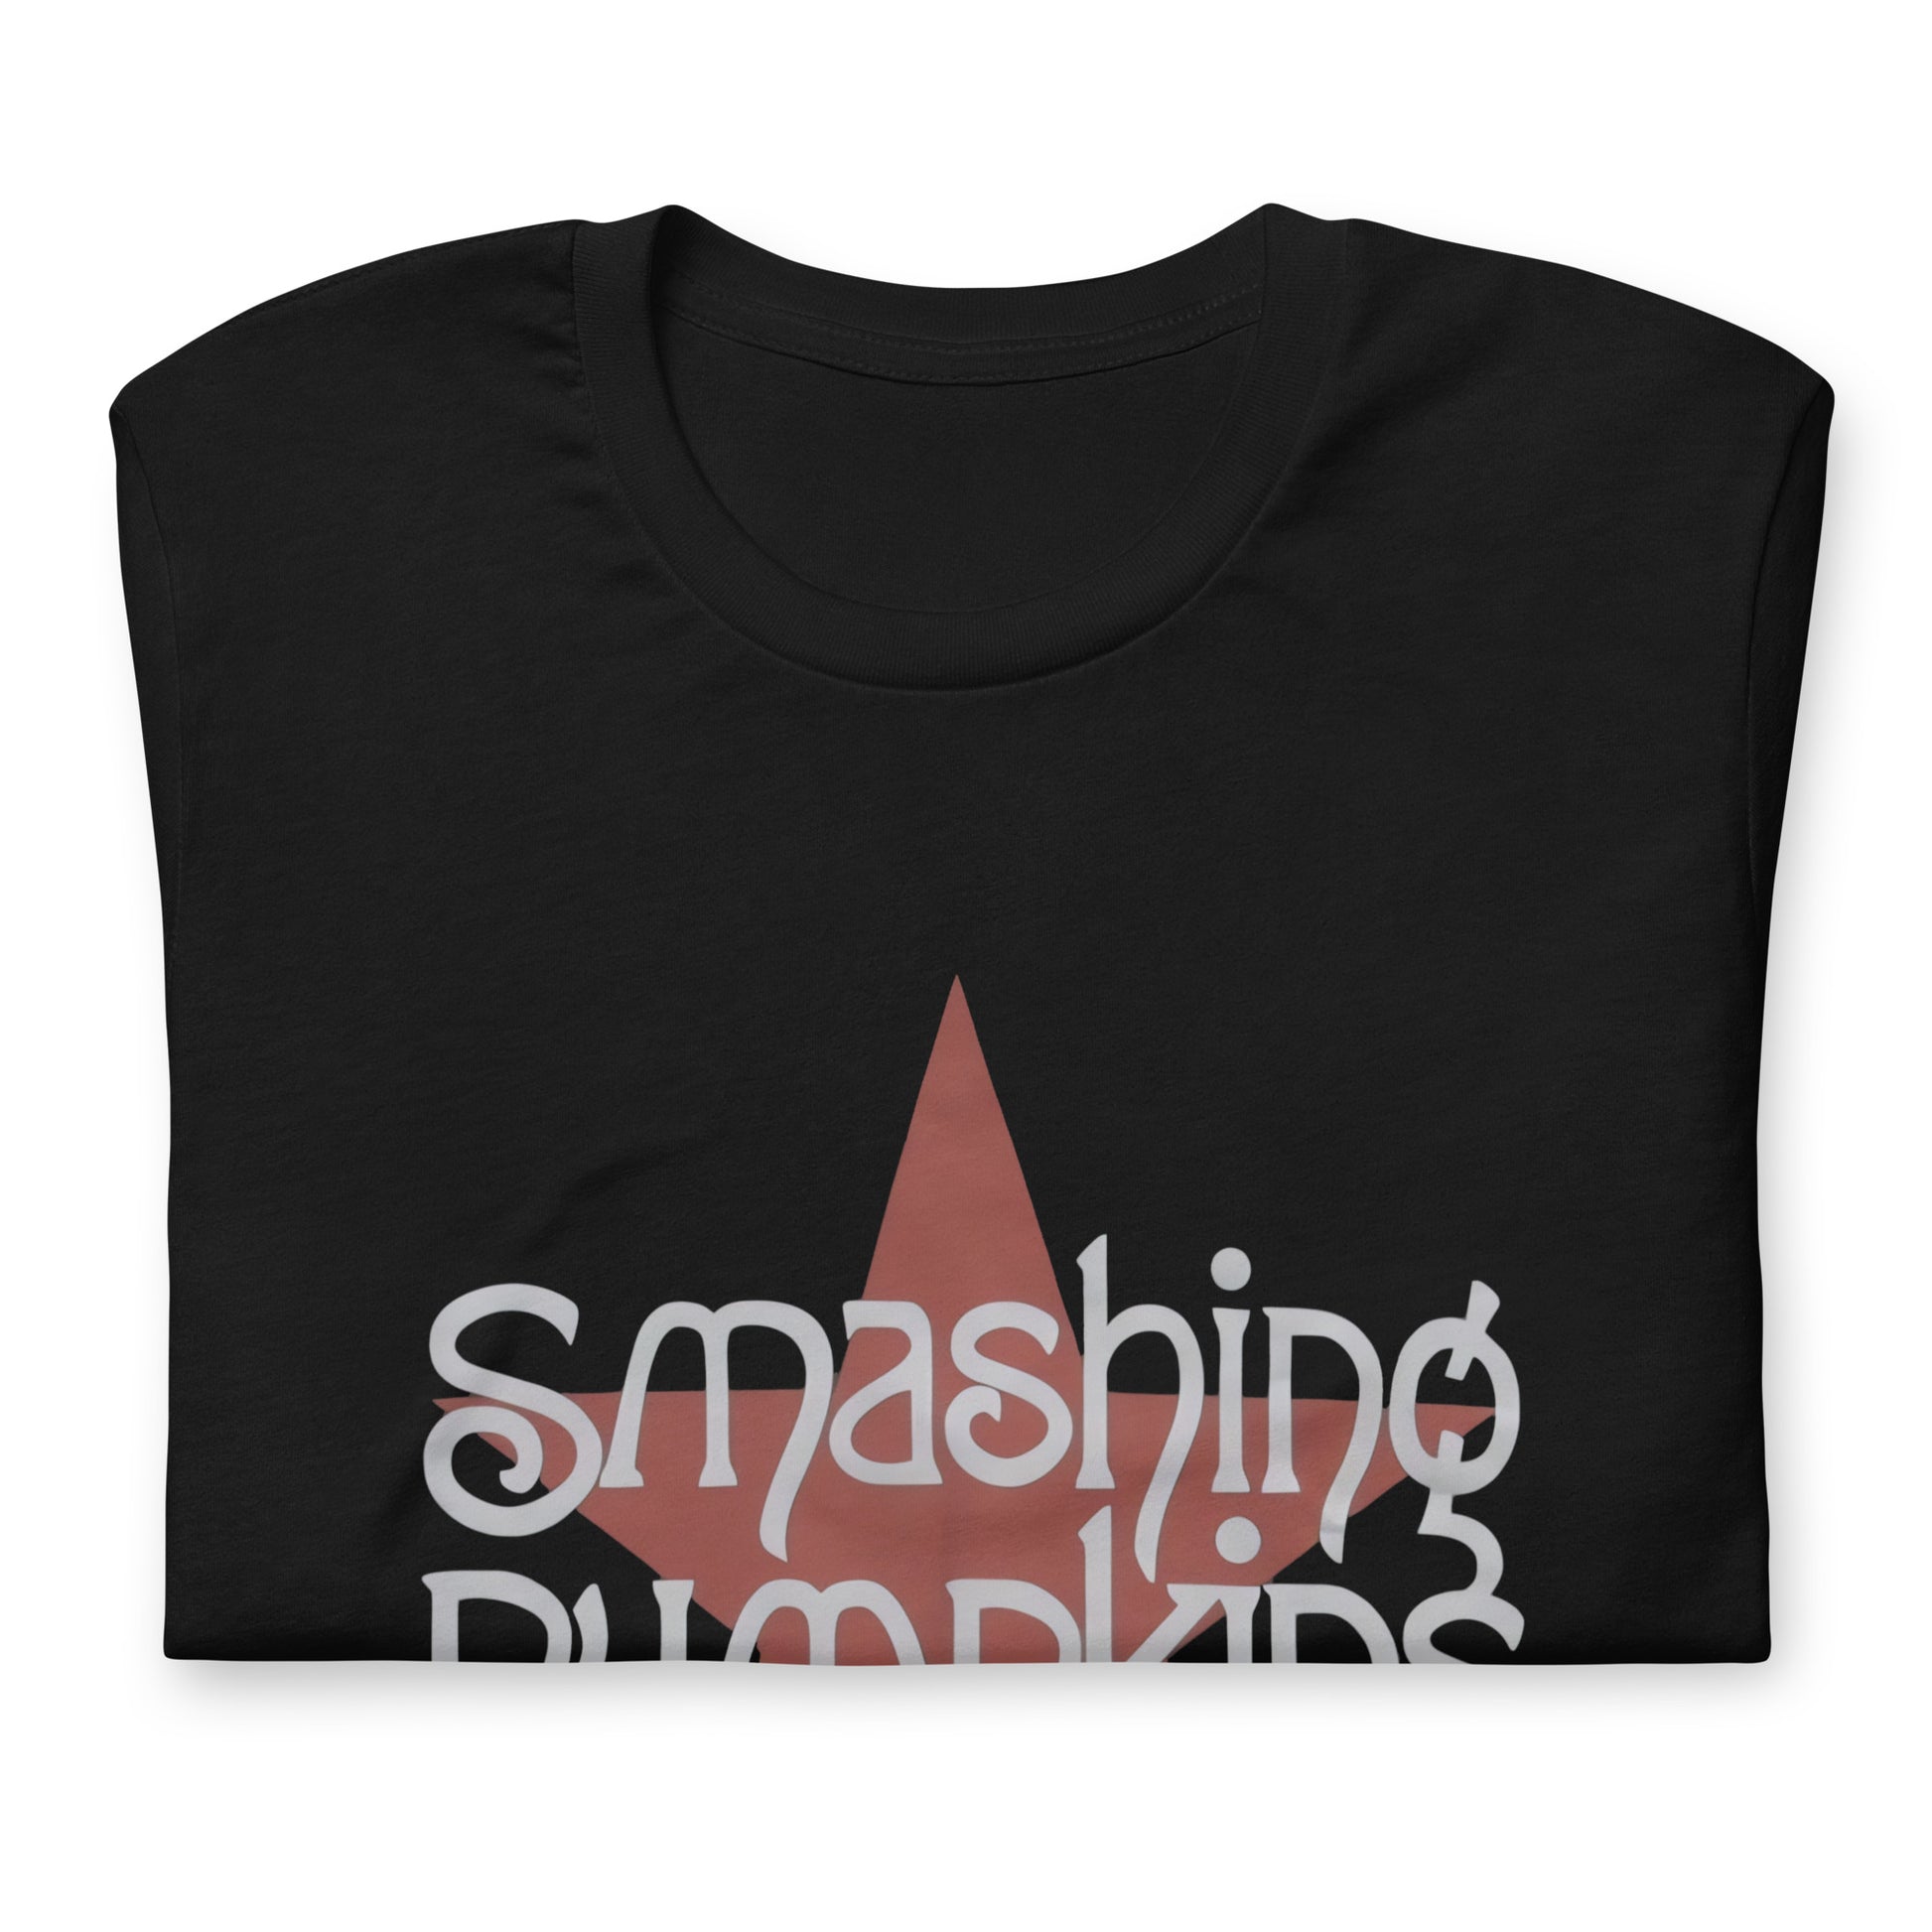 ¡Compra el mejor merchandising en Superstar! Encuentra diseños únicos y de alta calidad en playeras, Camiseta Star Smashing Pumpkins